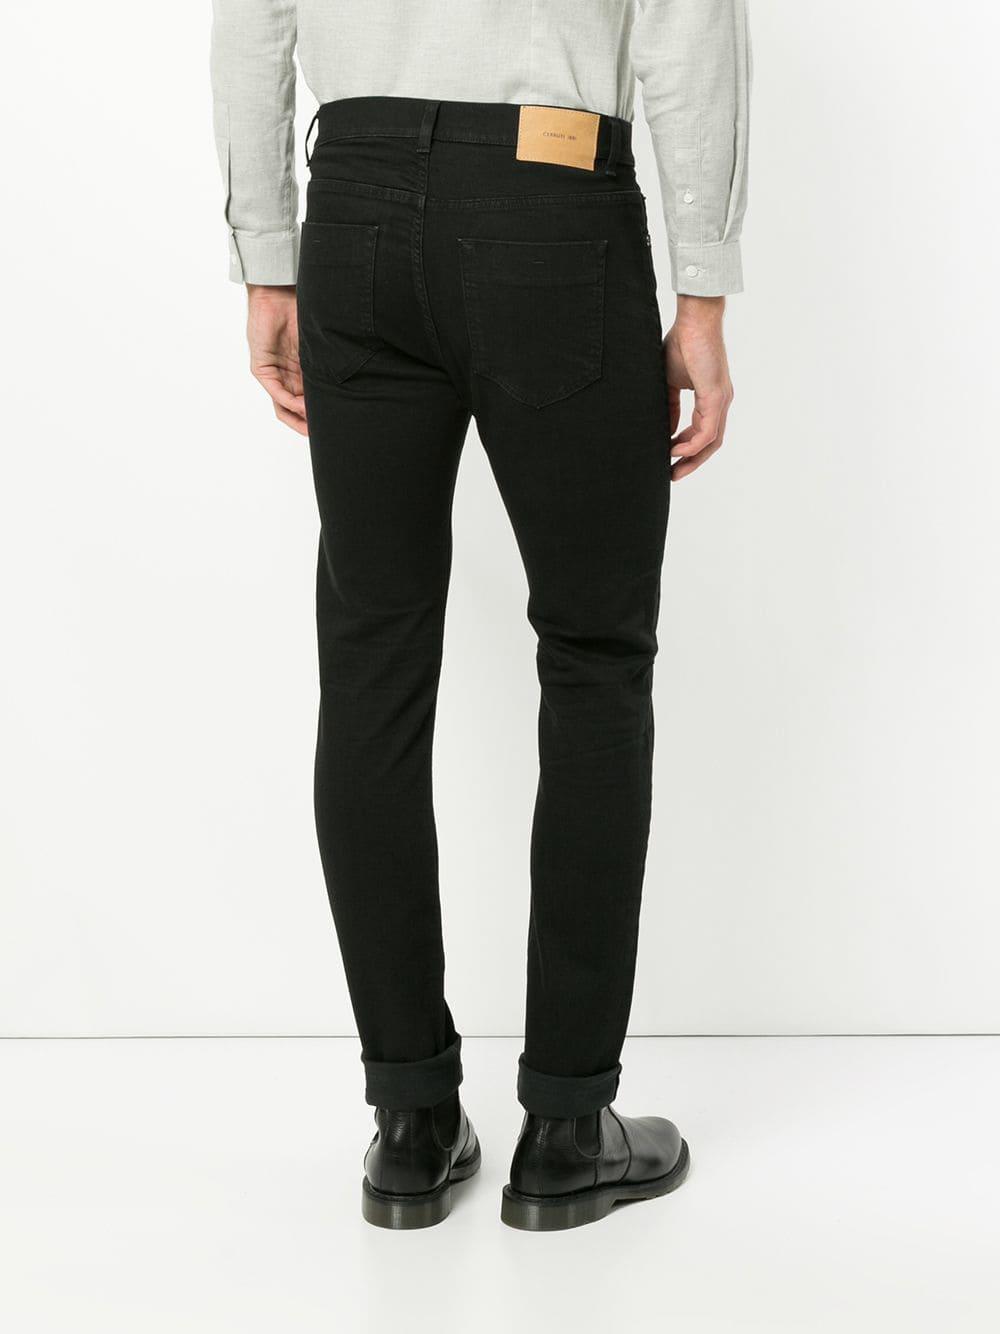 Cerruti 1881 Denim Skinny Jeans in Black for Men - Lyst